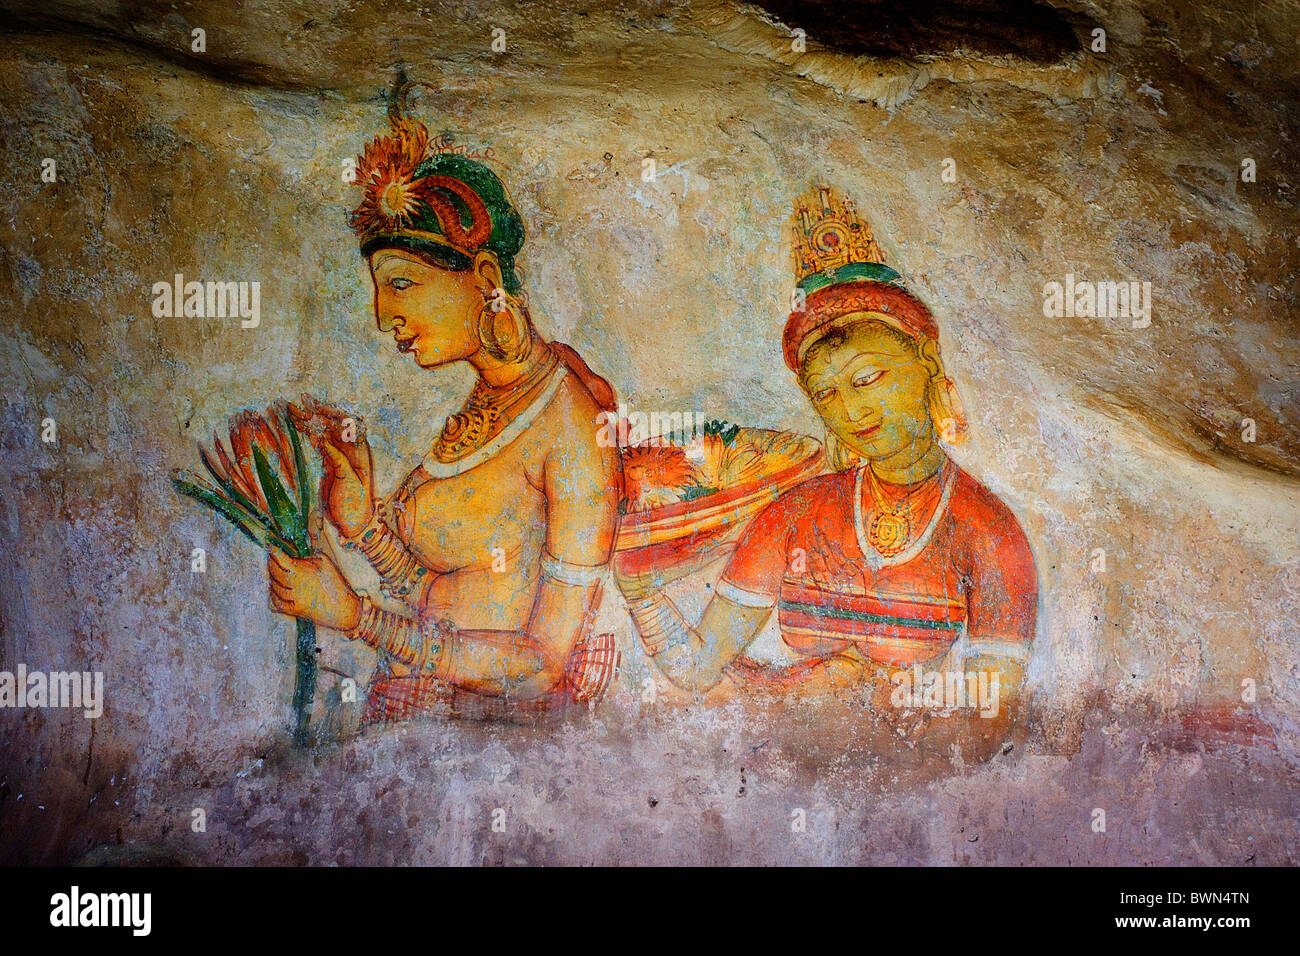 Asie Sri Lanka Sigiriya Ville villes anciennes site du patrimoine mondial de l'rock fortress fresques fresque Banque D'Images